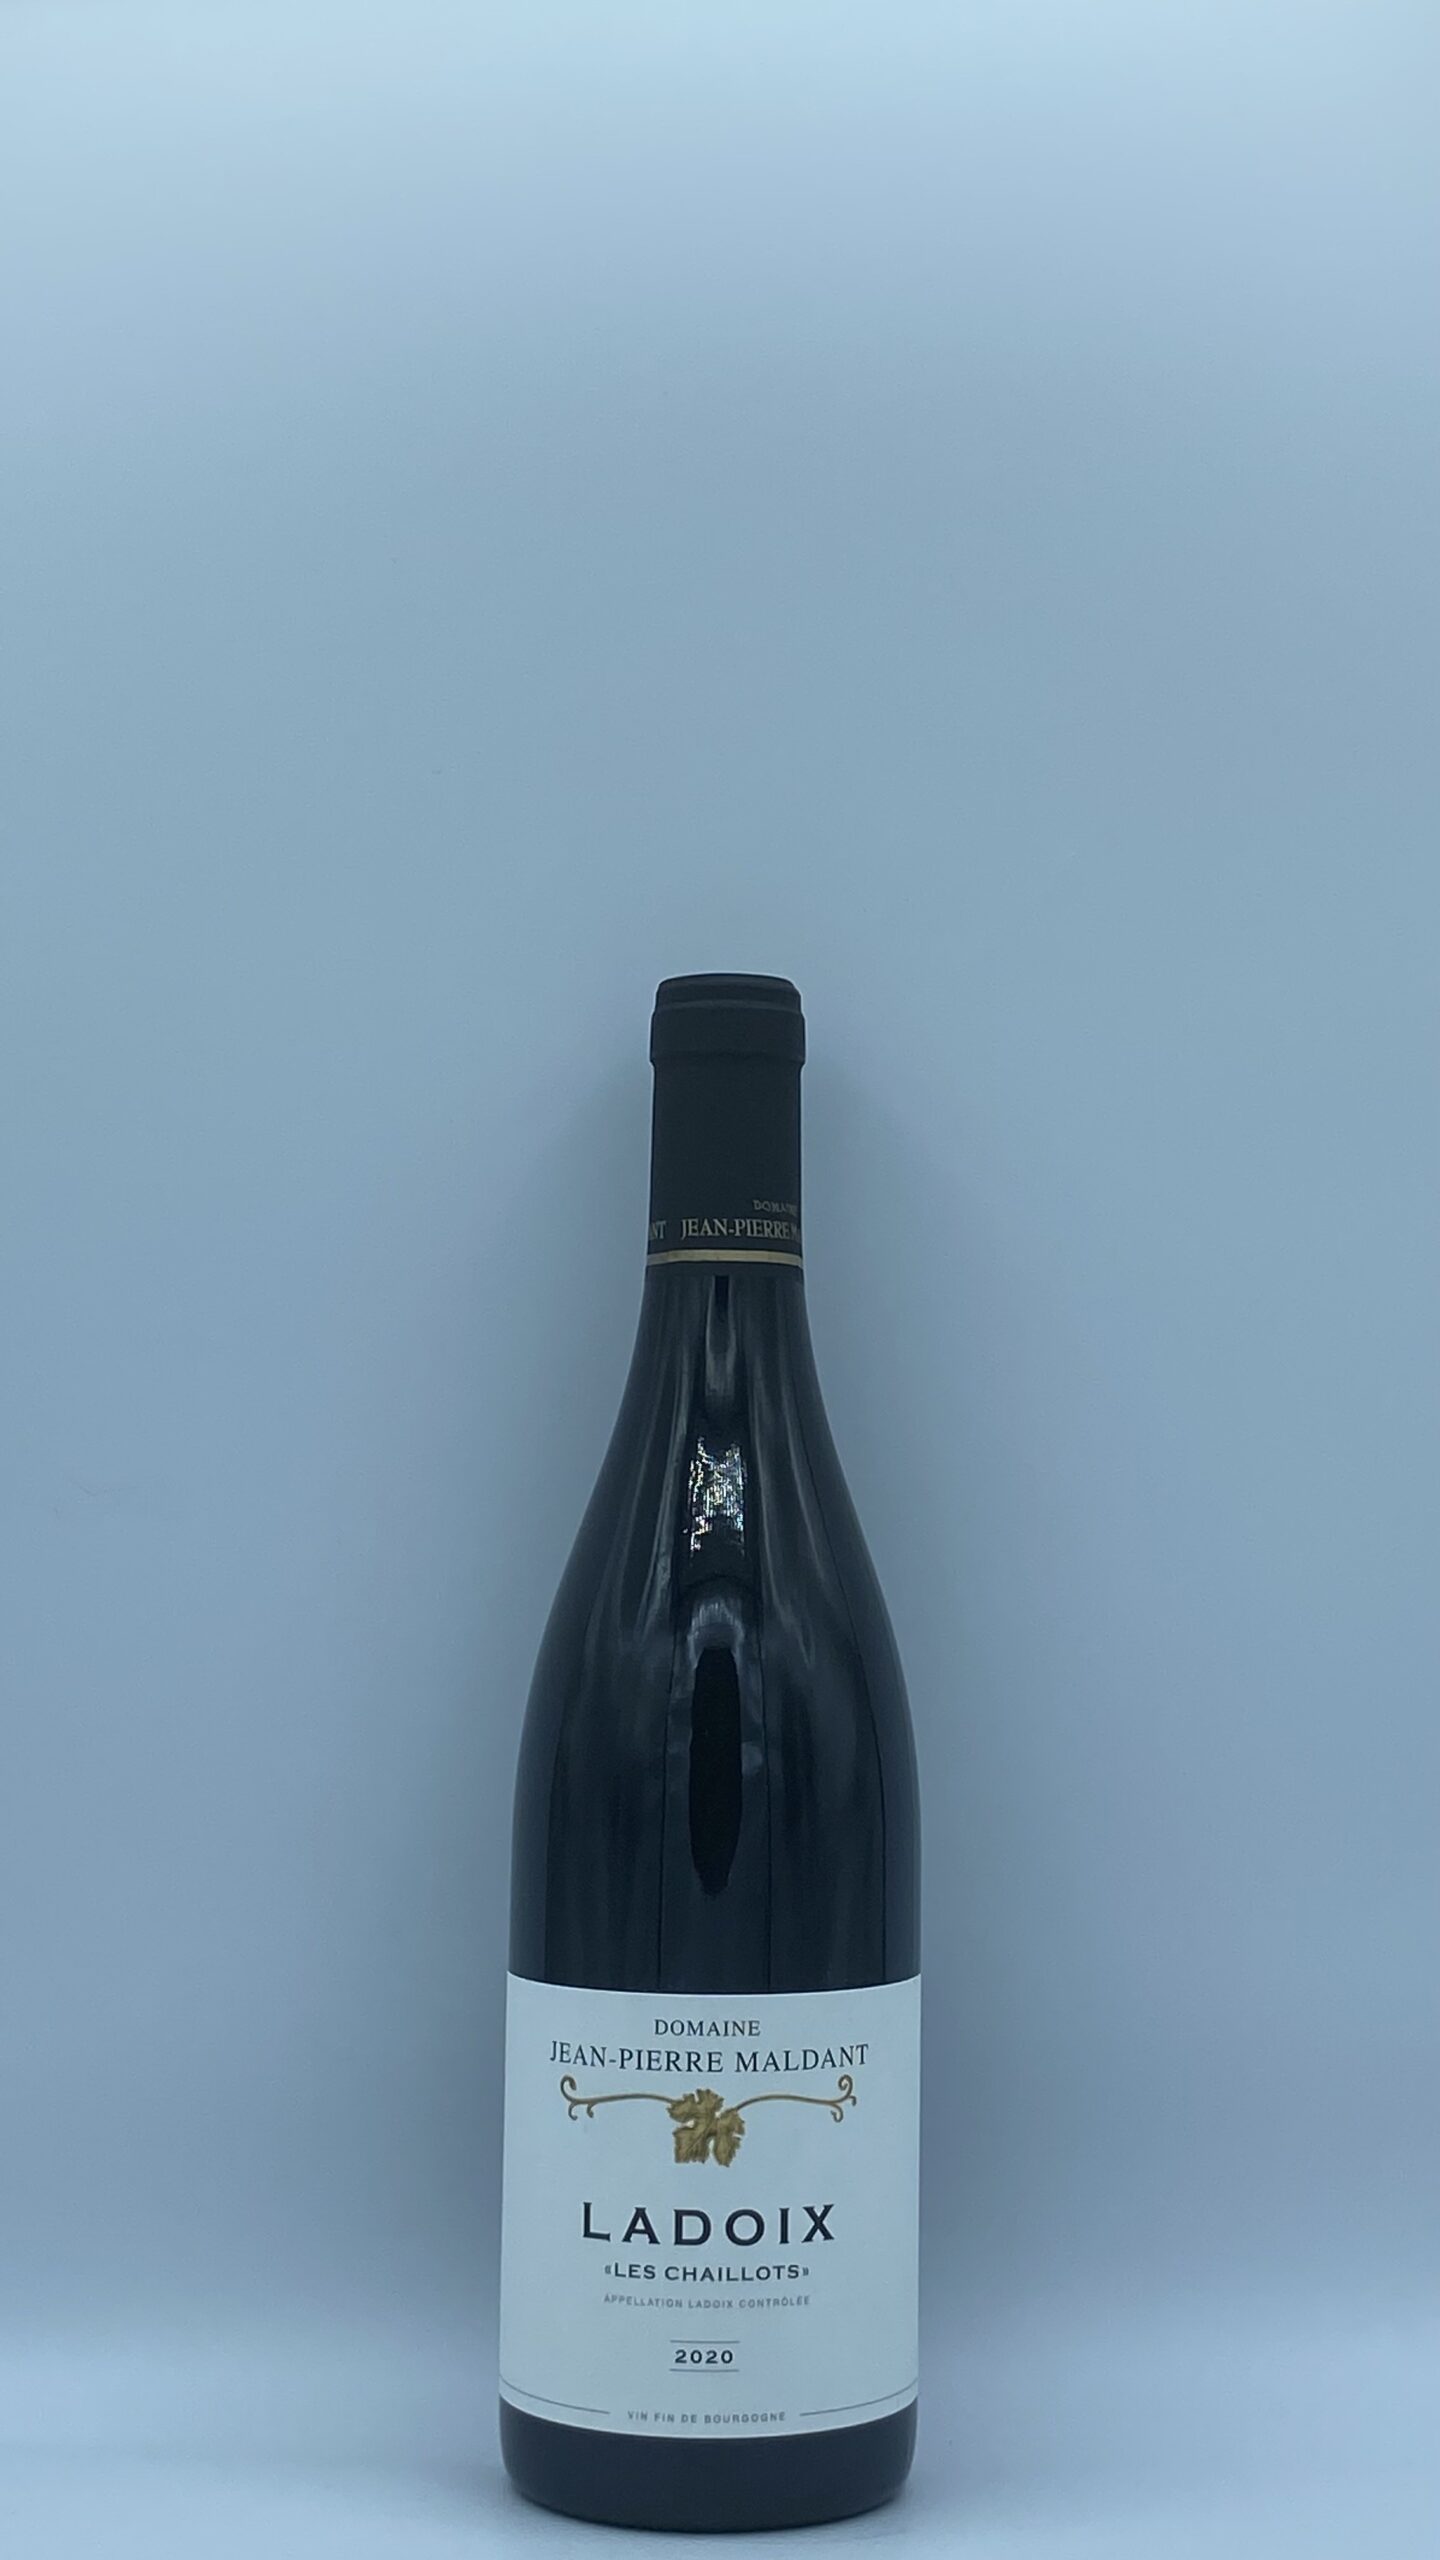 Bourgogne Ladoix “Les Chaillots” 2020 Jean Pierre Maldant